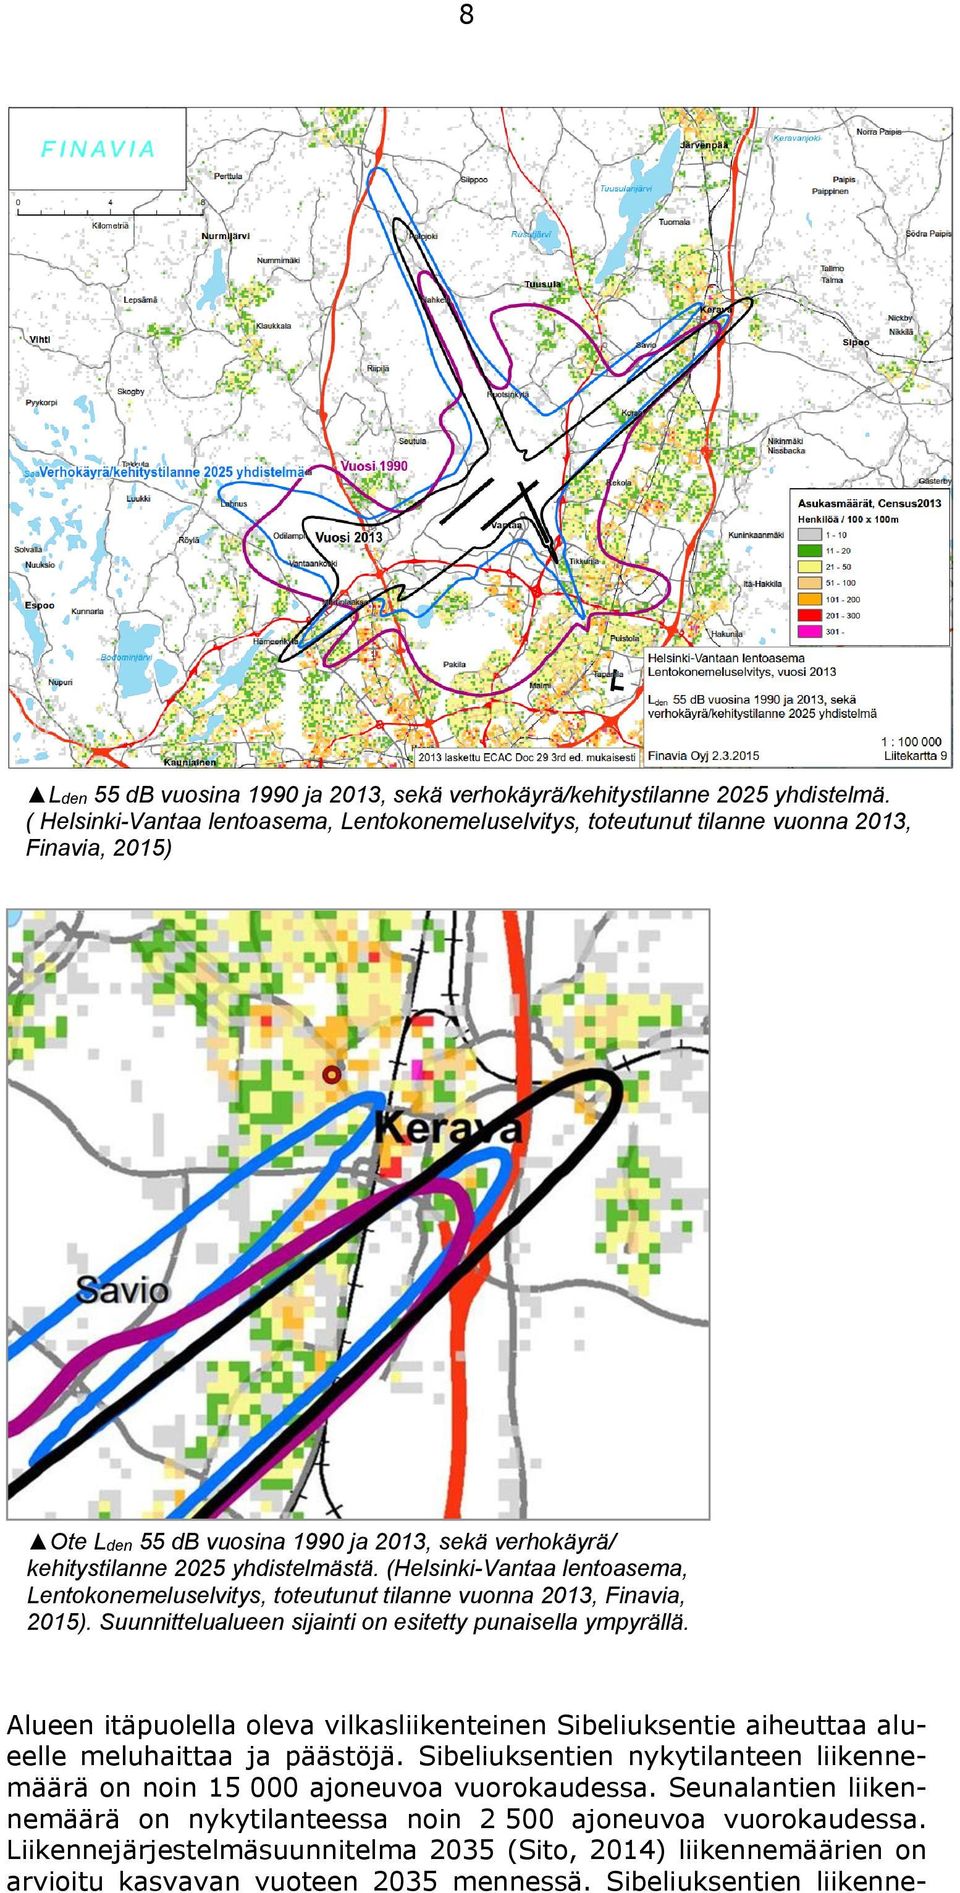 (Helsinki-Vantaa lentoasema, Lentokonemeluselvitys, toteutunut tilanne vuonna 2013, Finavia, 2015). Suunnittelualueen sijainti on esitetty punaisella ympyrällä.